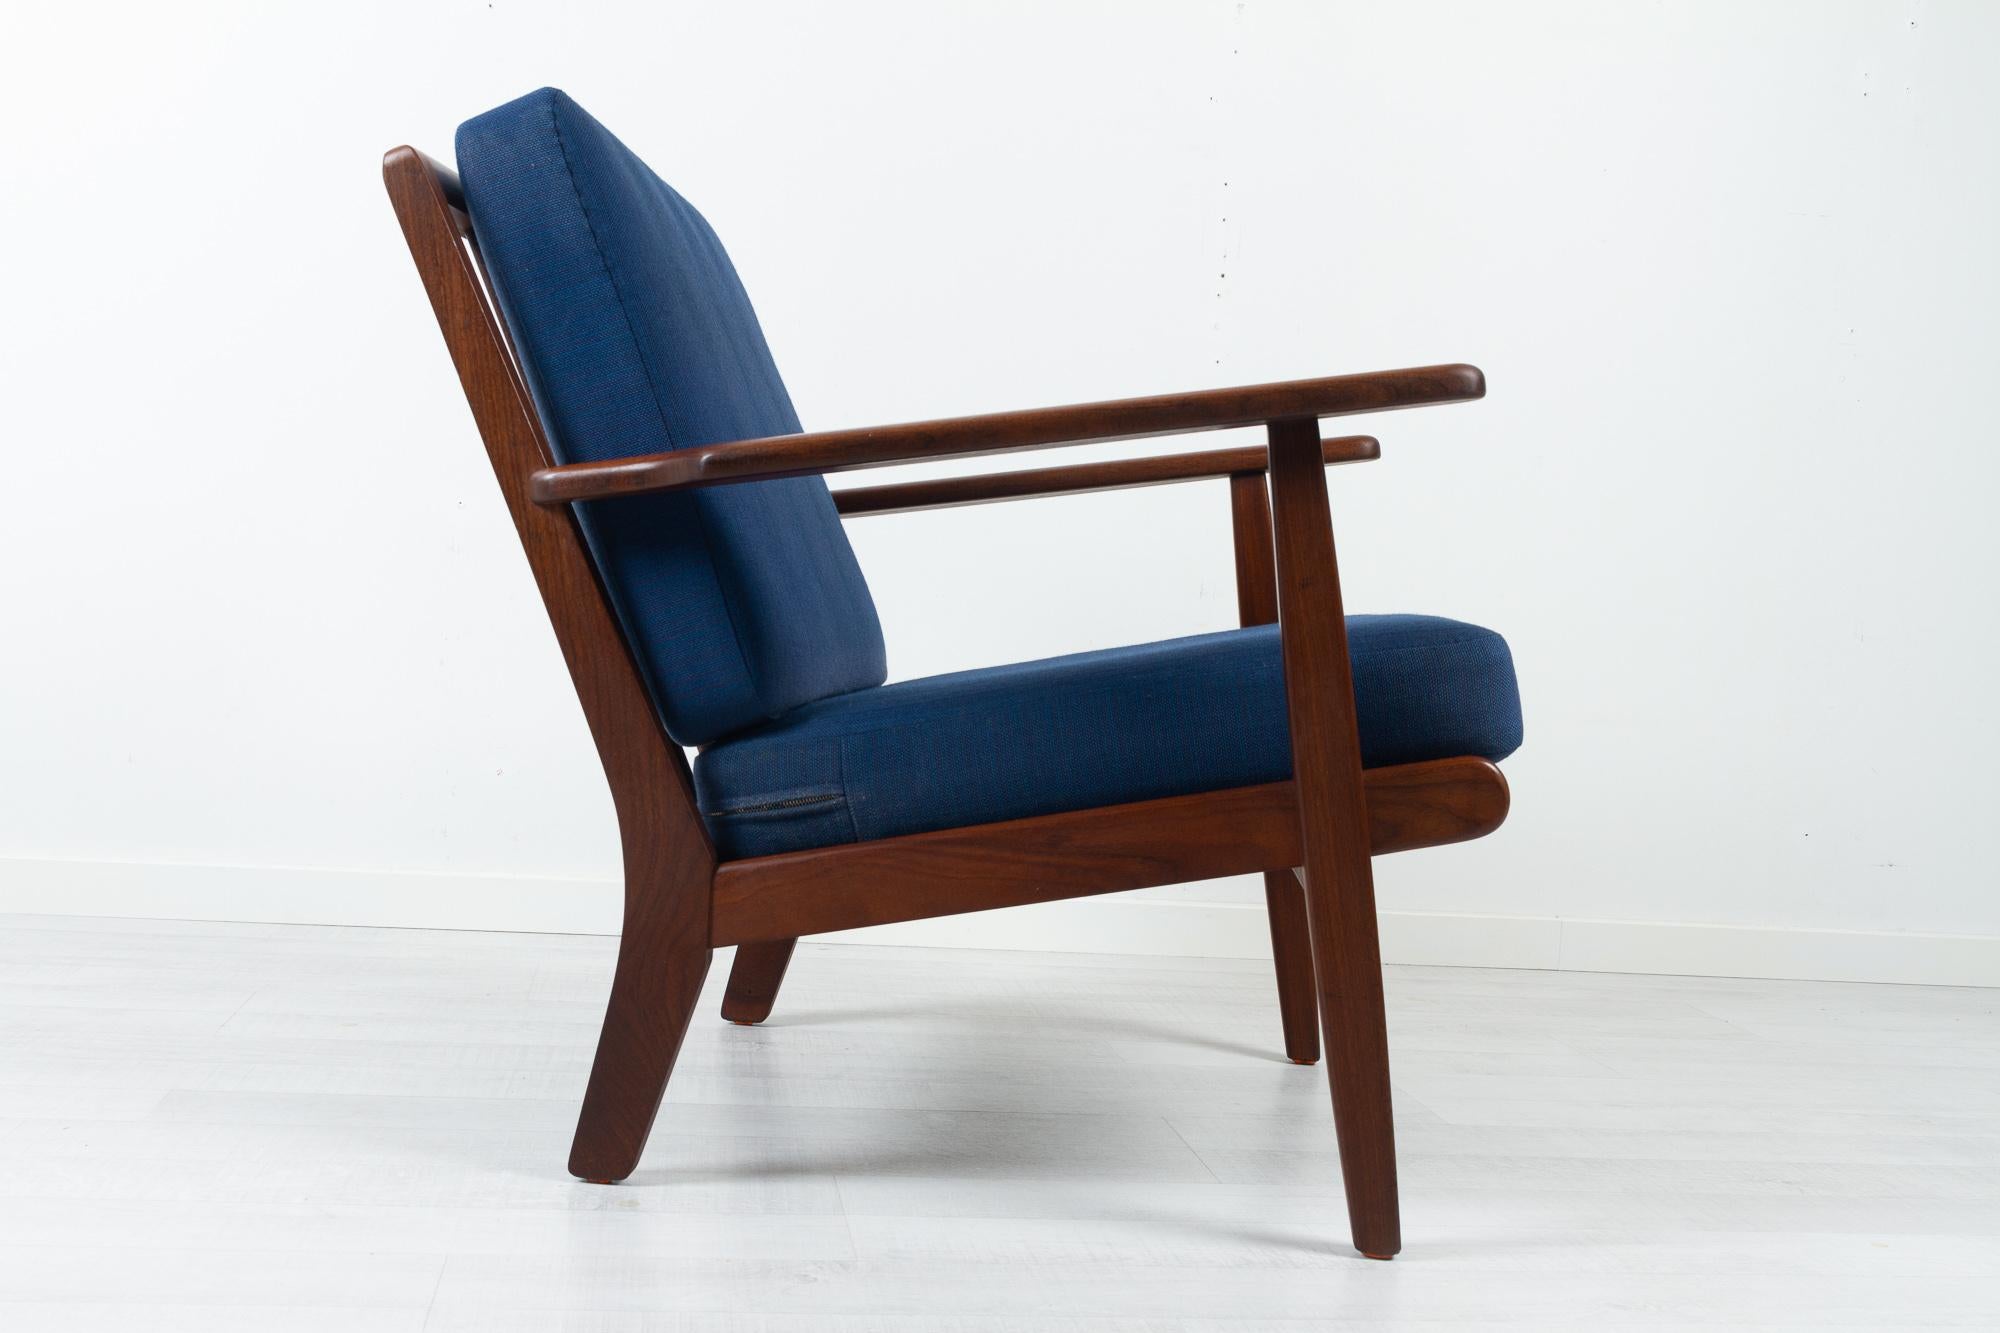 Vintage Danish lounge chair GE-88 von Aage Pedersen für GETAMA Dänemark 1960er Jahre.
Moderner dänischer Loungesessel, Modell GE88, entworfen vom Inhaber der Möbelfabrik GETAMA, Aage Pedersen. 
Dieser Sessel ist aus massivem Teakholz gefertigt und